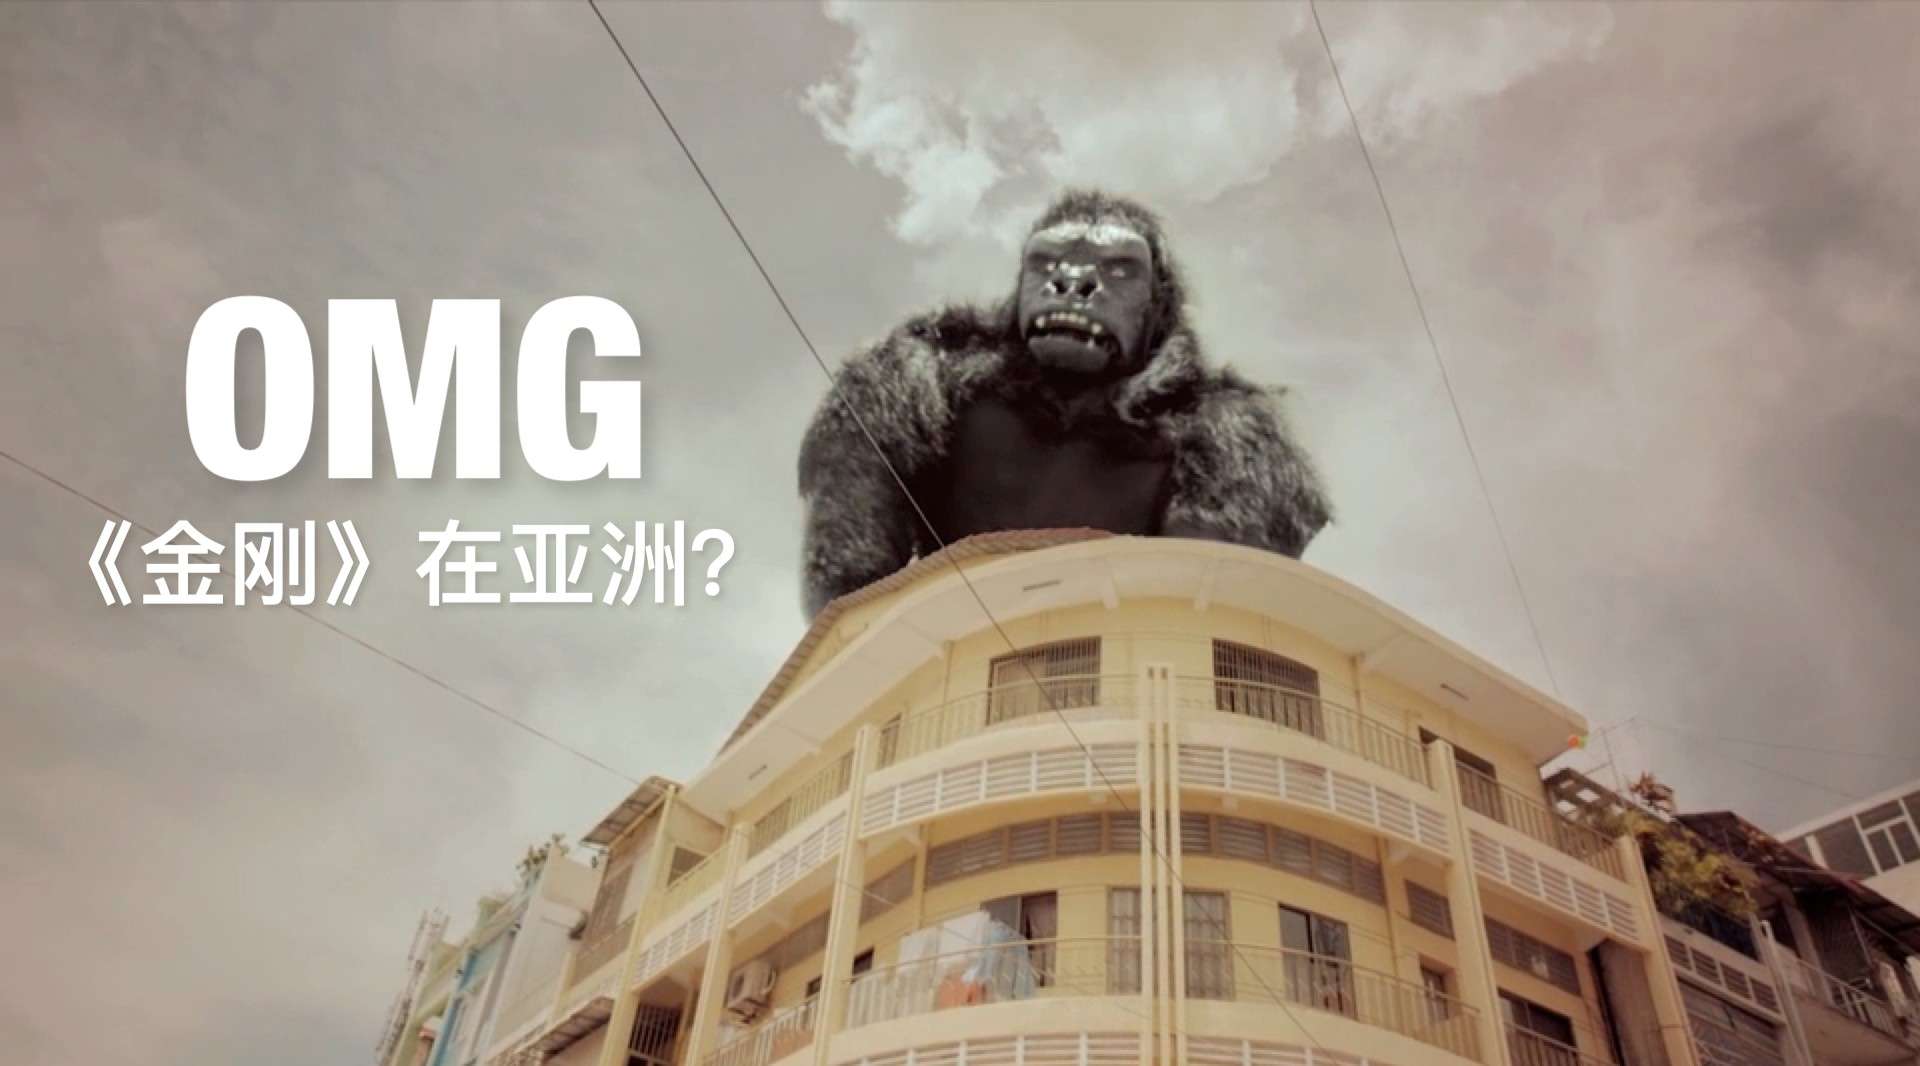 OMG《金刚》KING KONG 在亚洲 ? 这可能是亚洲最大的消息吗?